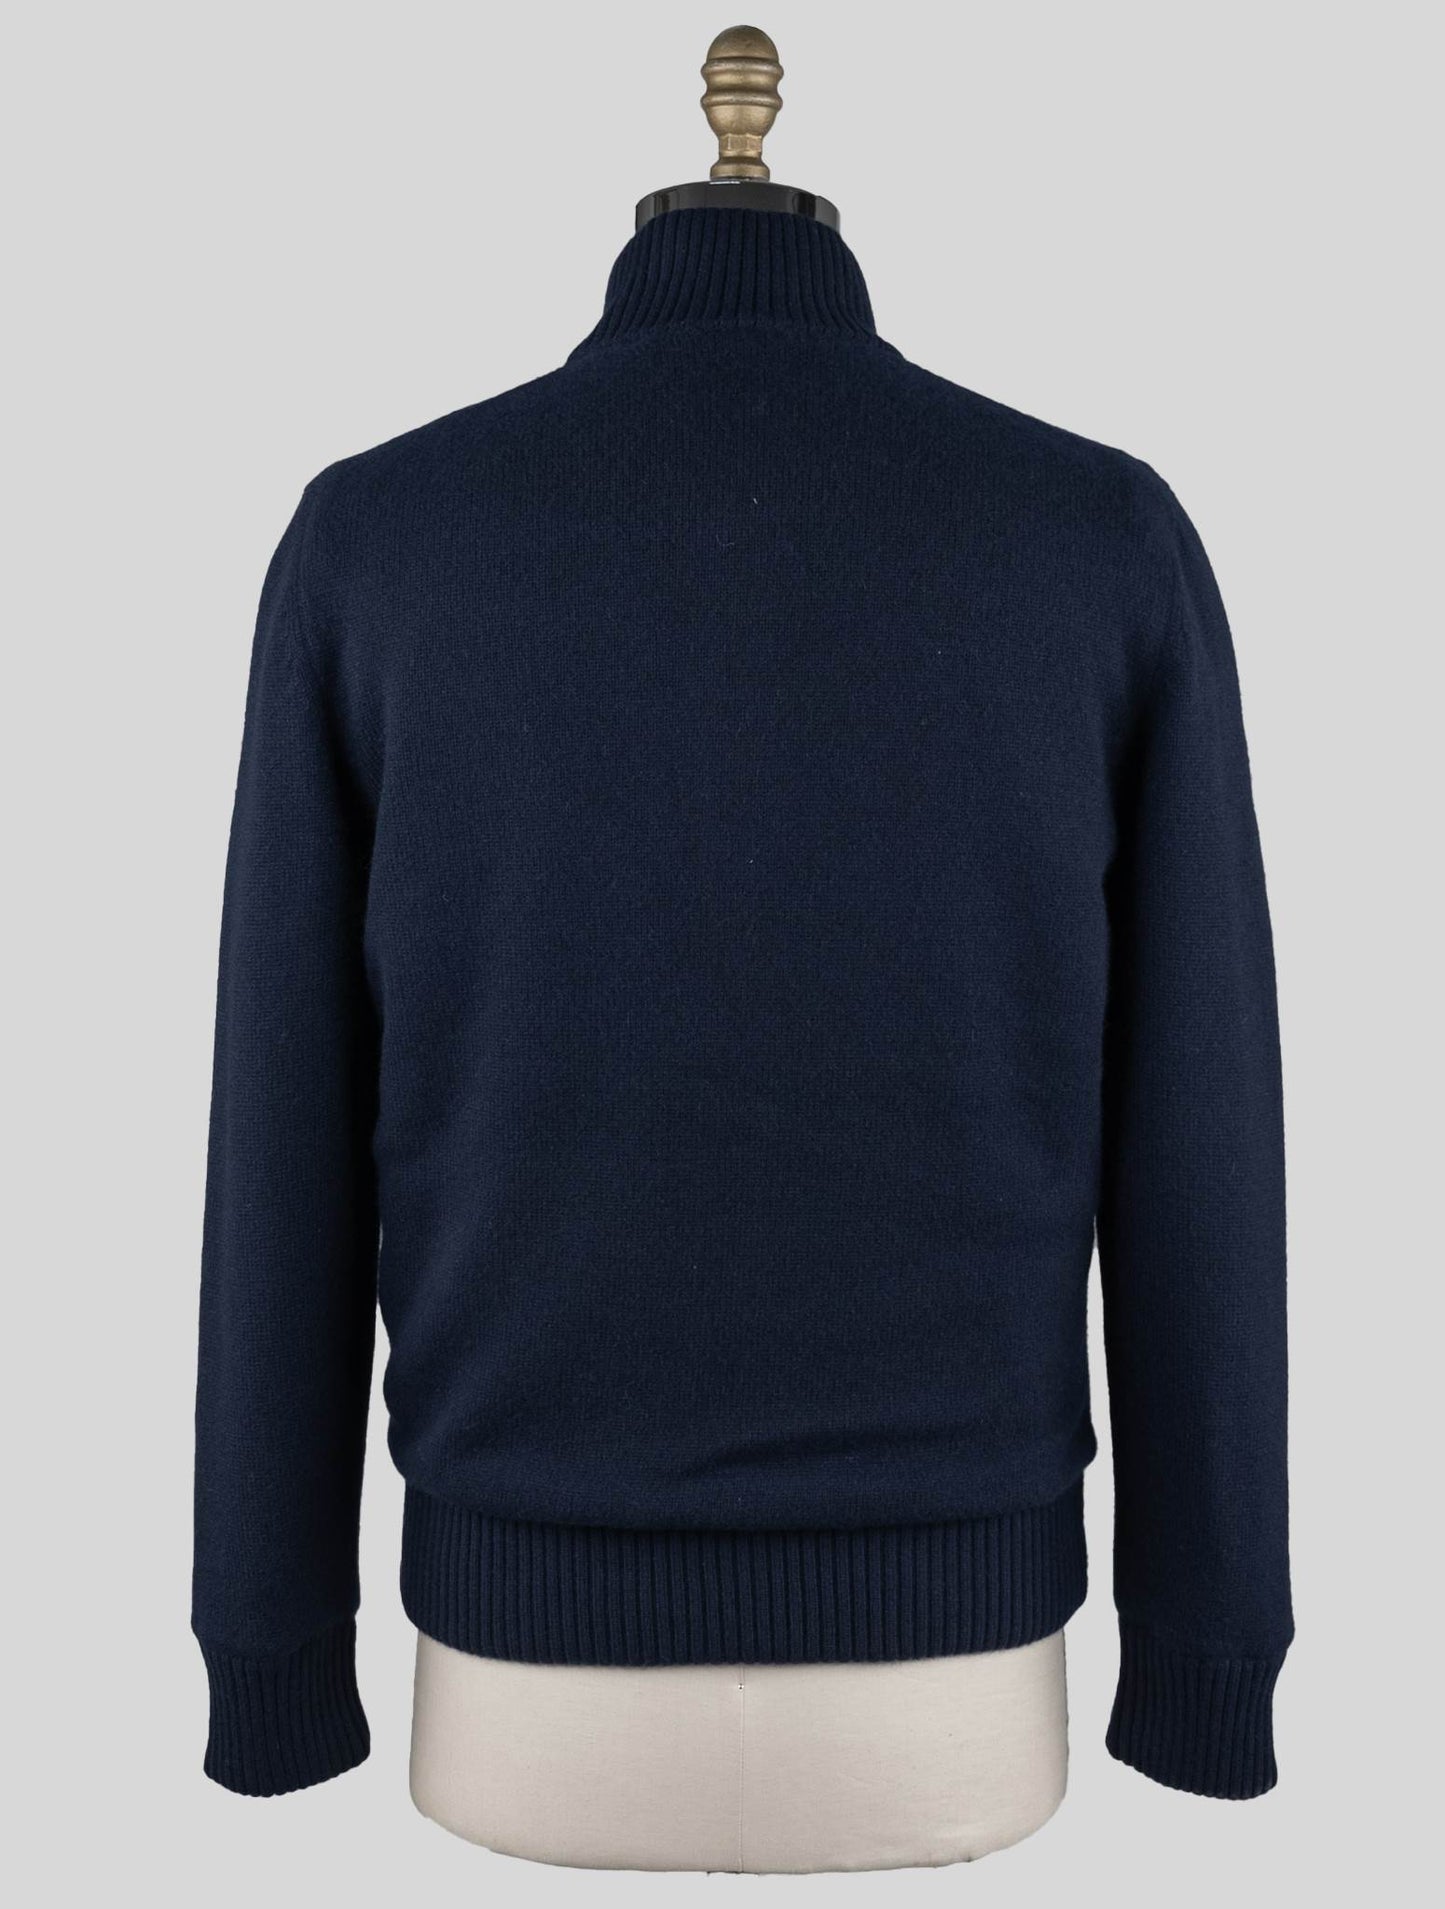 Gran Sasso синий кашемир из искусственного меха pl свитер